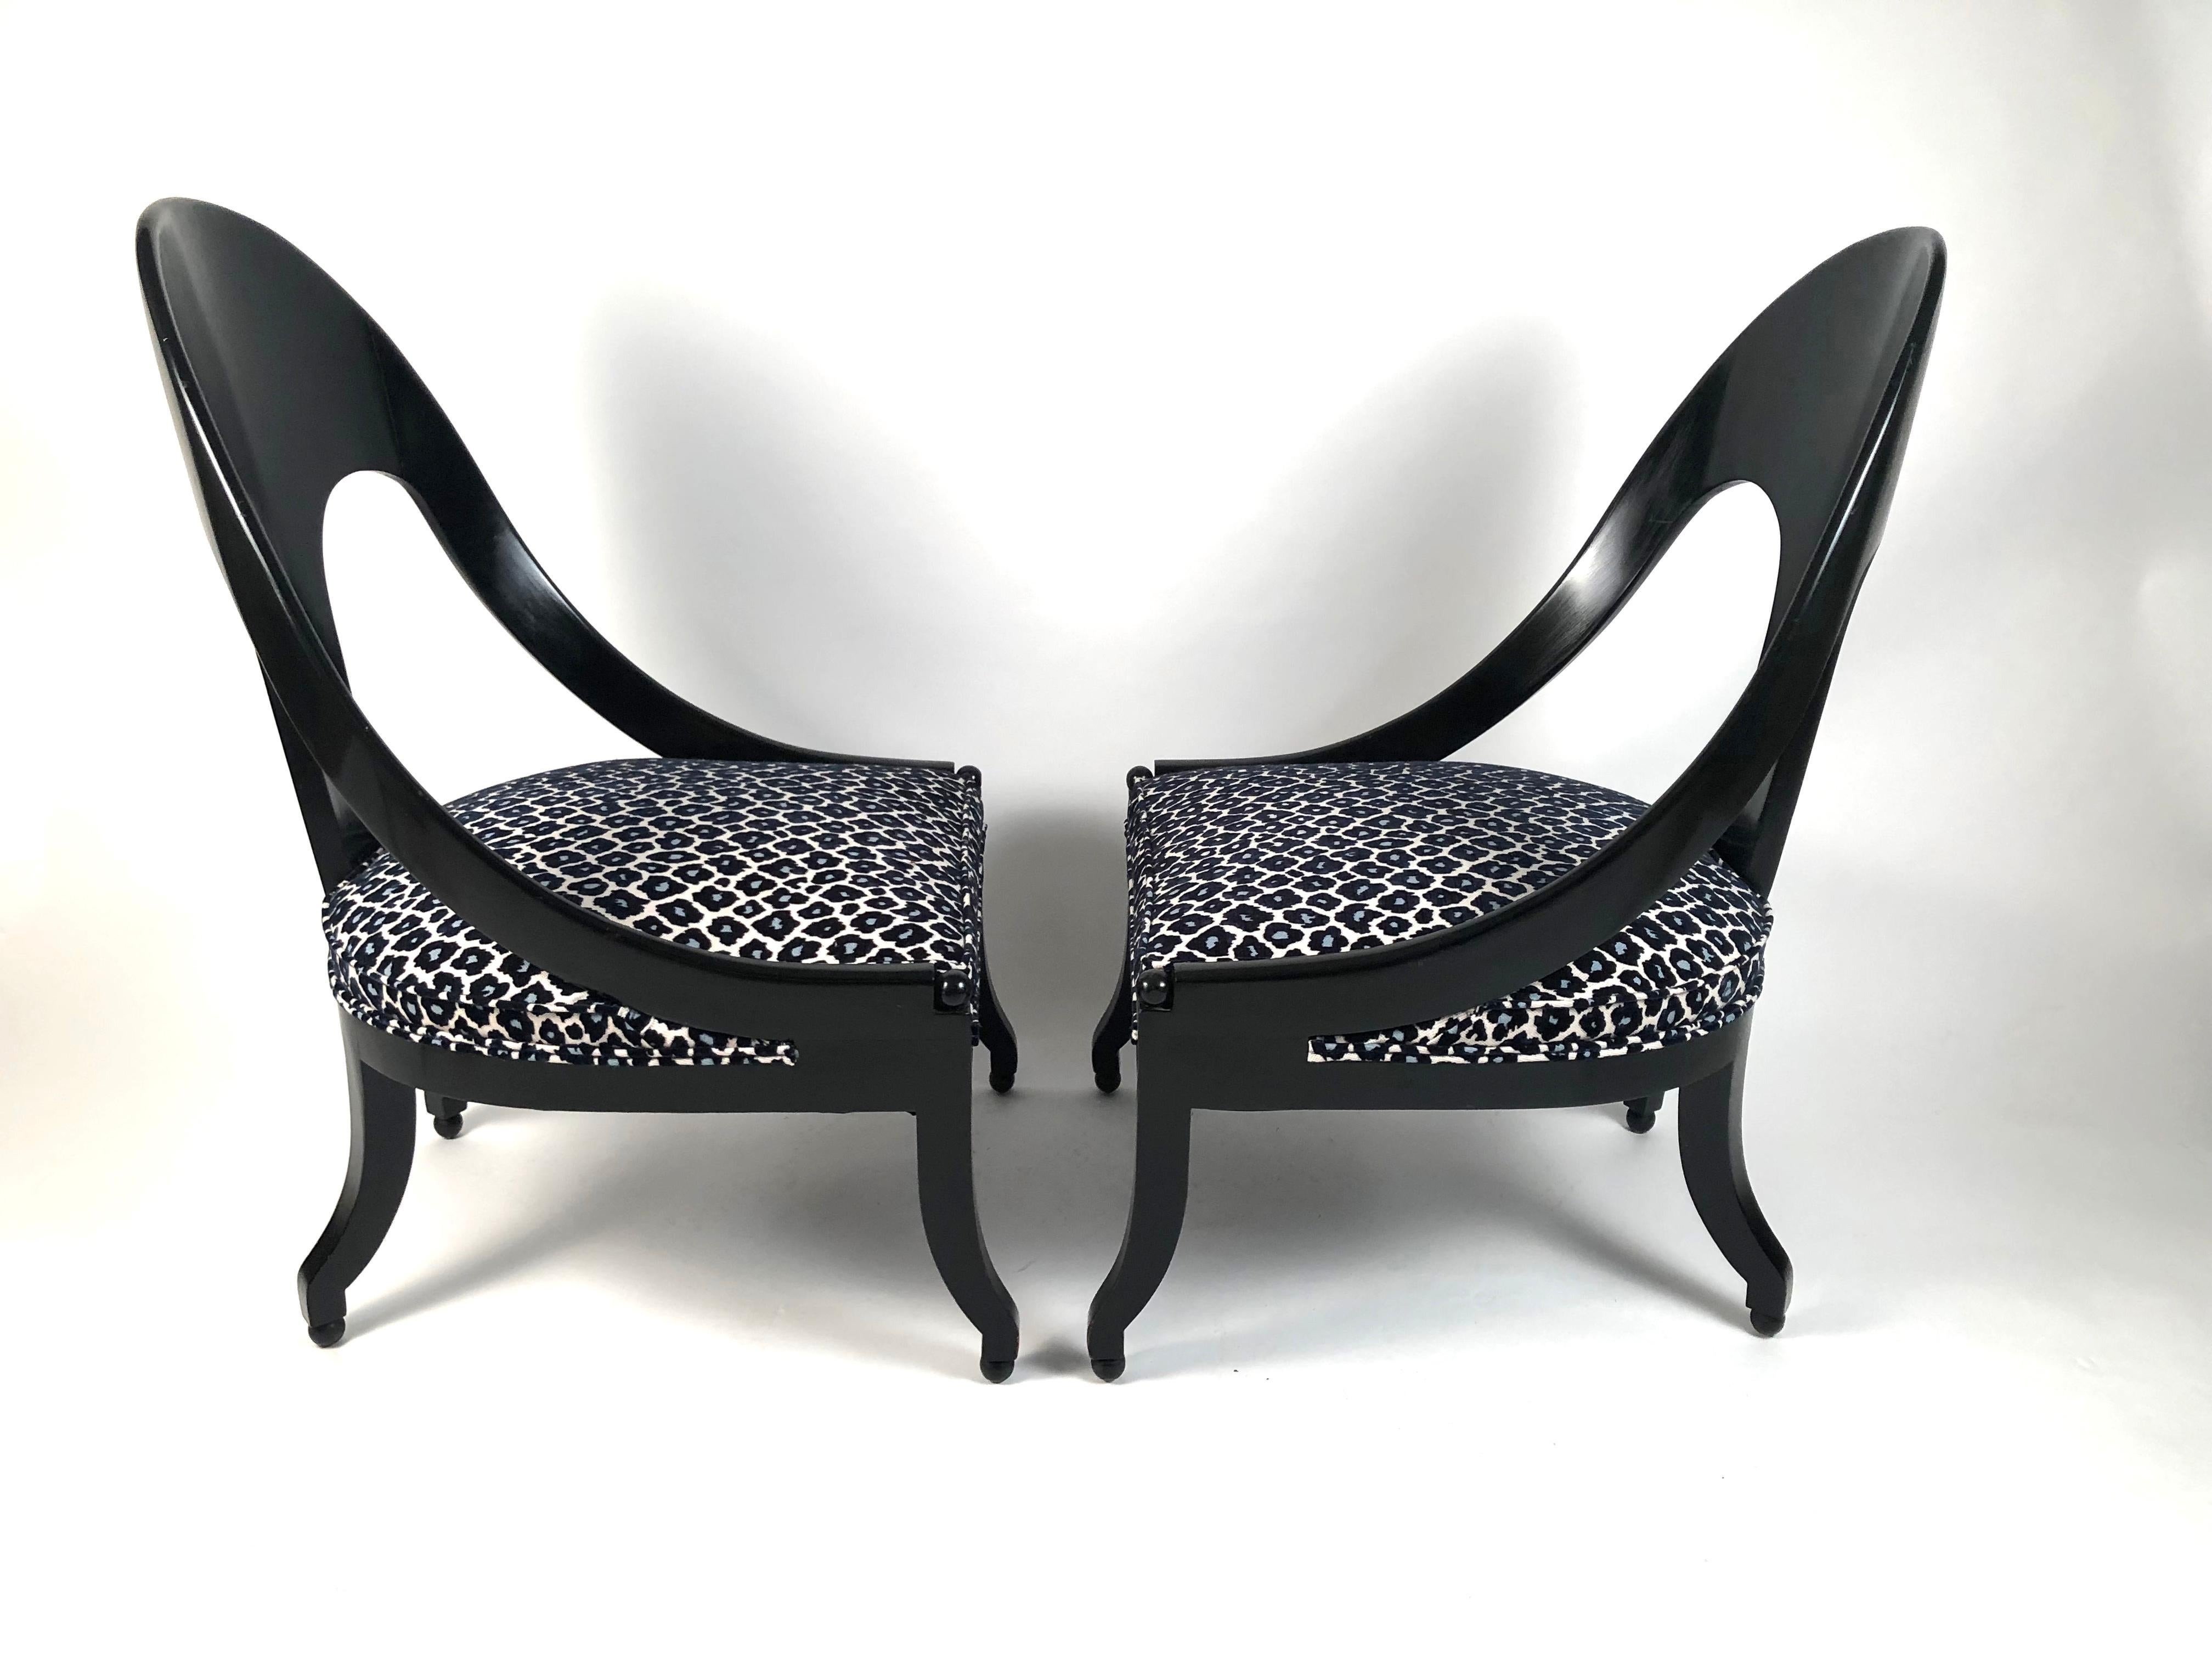 American Pair of Vintage Black Hollywood Regency Style Spoon Back Chairs